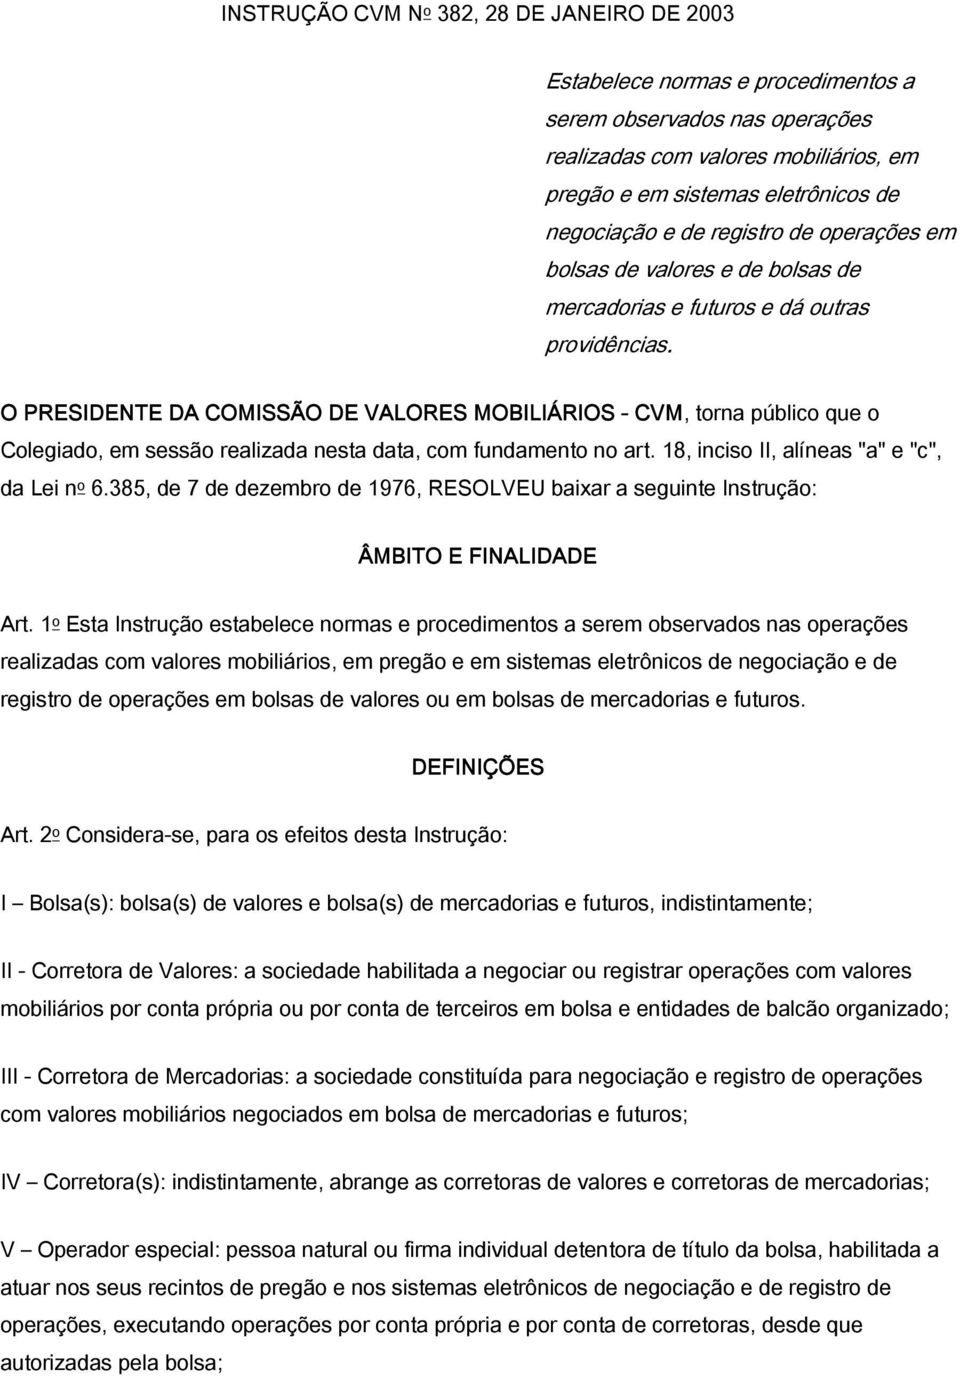 O PRESIDENTE DA COMISSÃO DE VALORES MOBILIÁRIOS - CVM, torna público que o Colegiado, em sessão realizada nesta data, com fundamento no art. 18, inciso II, alíneas "a" e "c", da Lei n o 6.